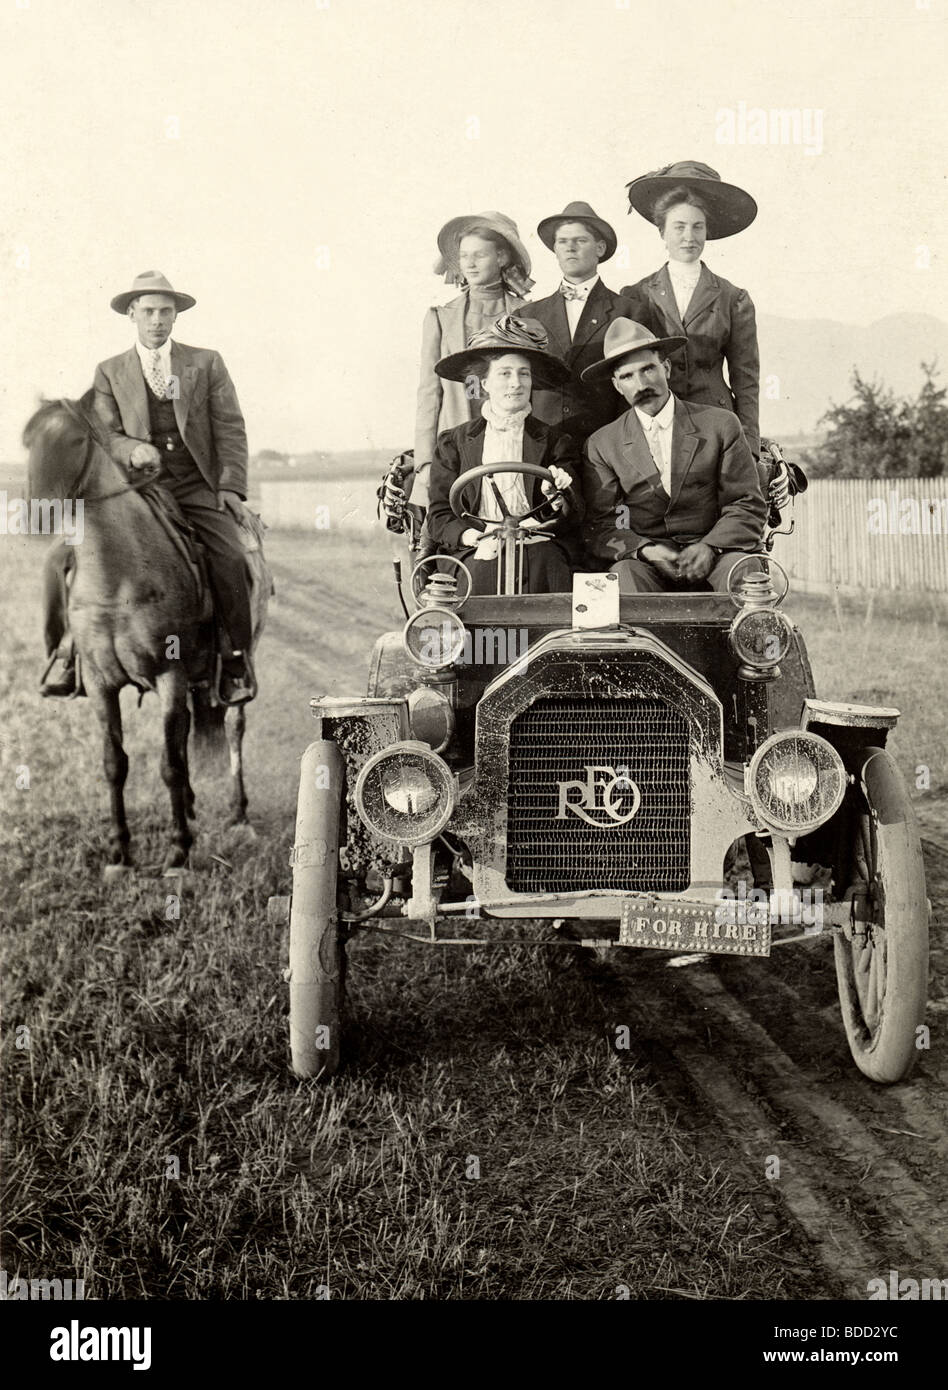 Fünf Menschen im antiken Reo Auto & Mann auf dem Rücken der Pferde Stockfoto